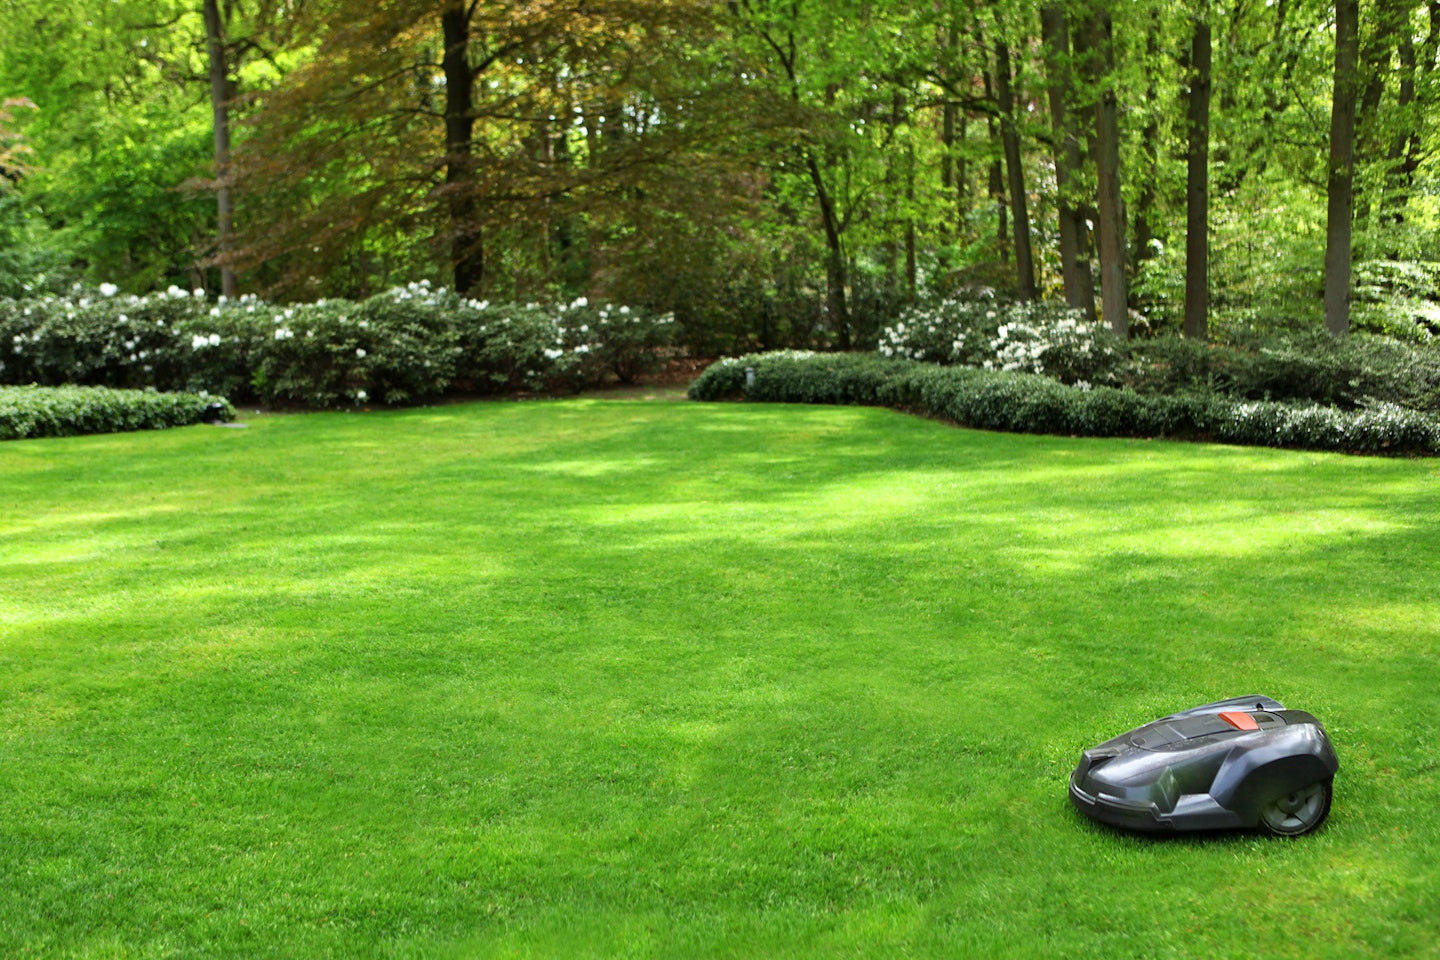 a robot lawnmower cutting grass